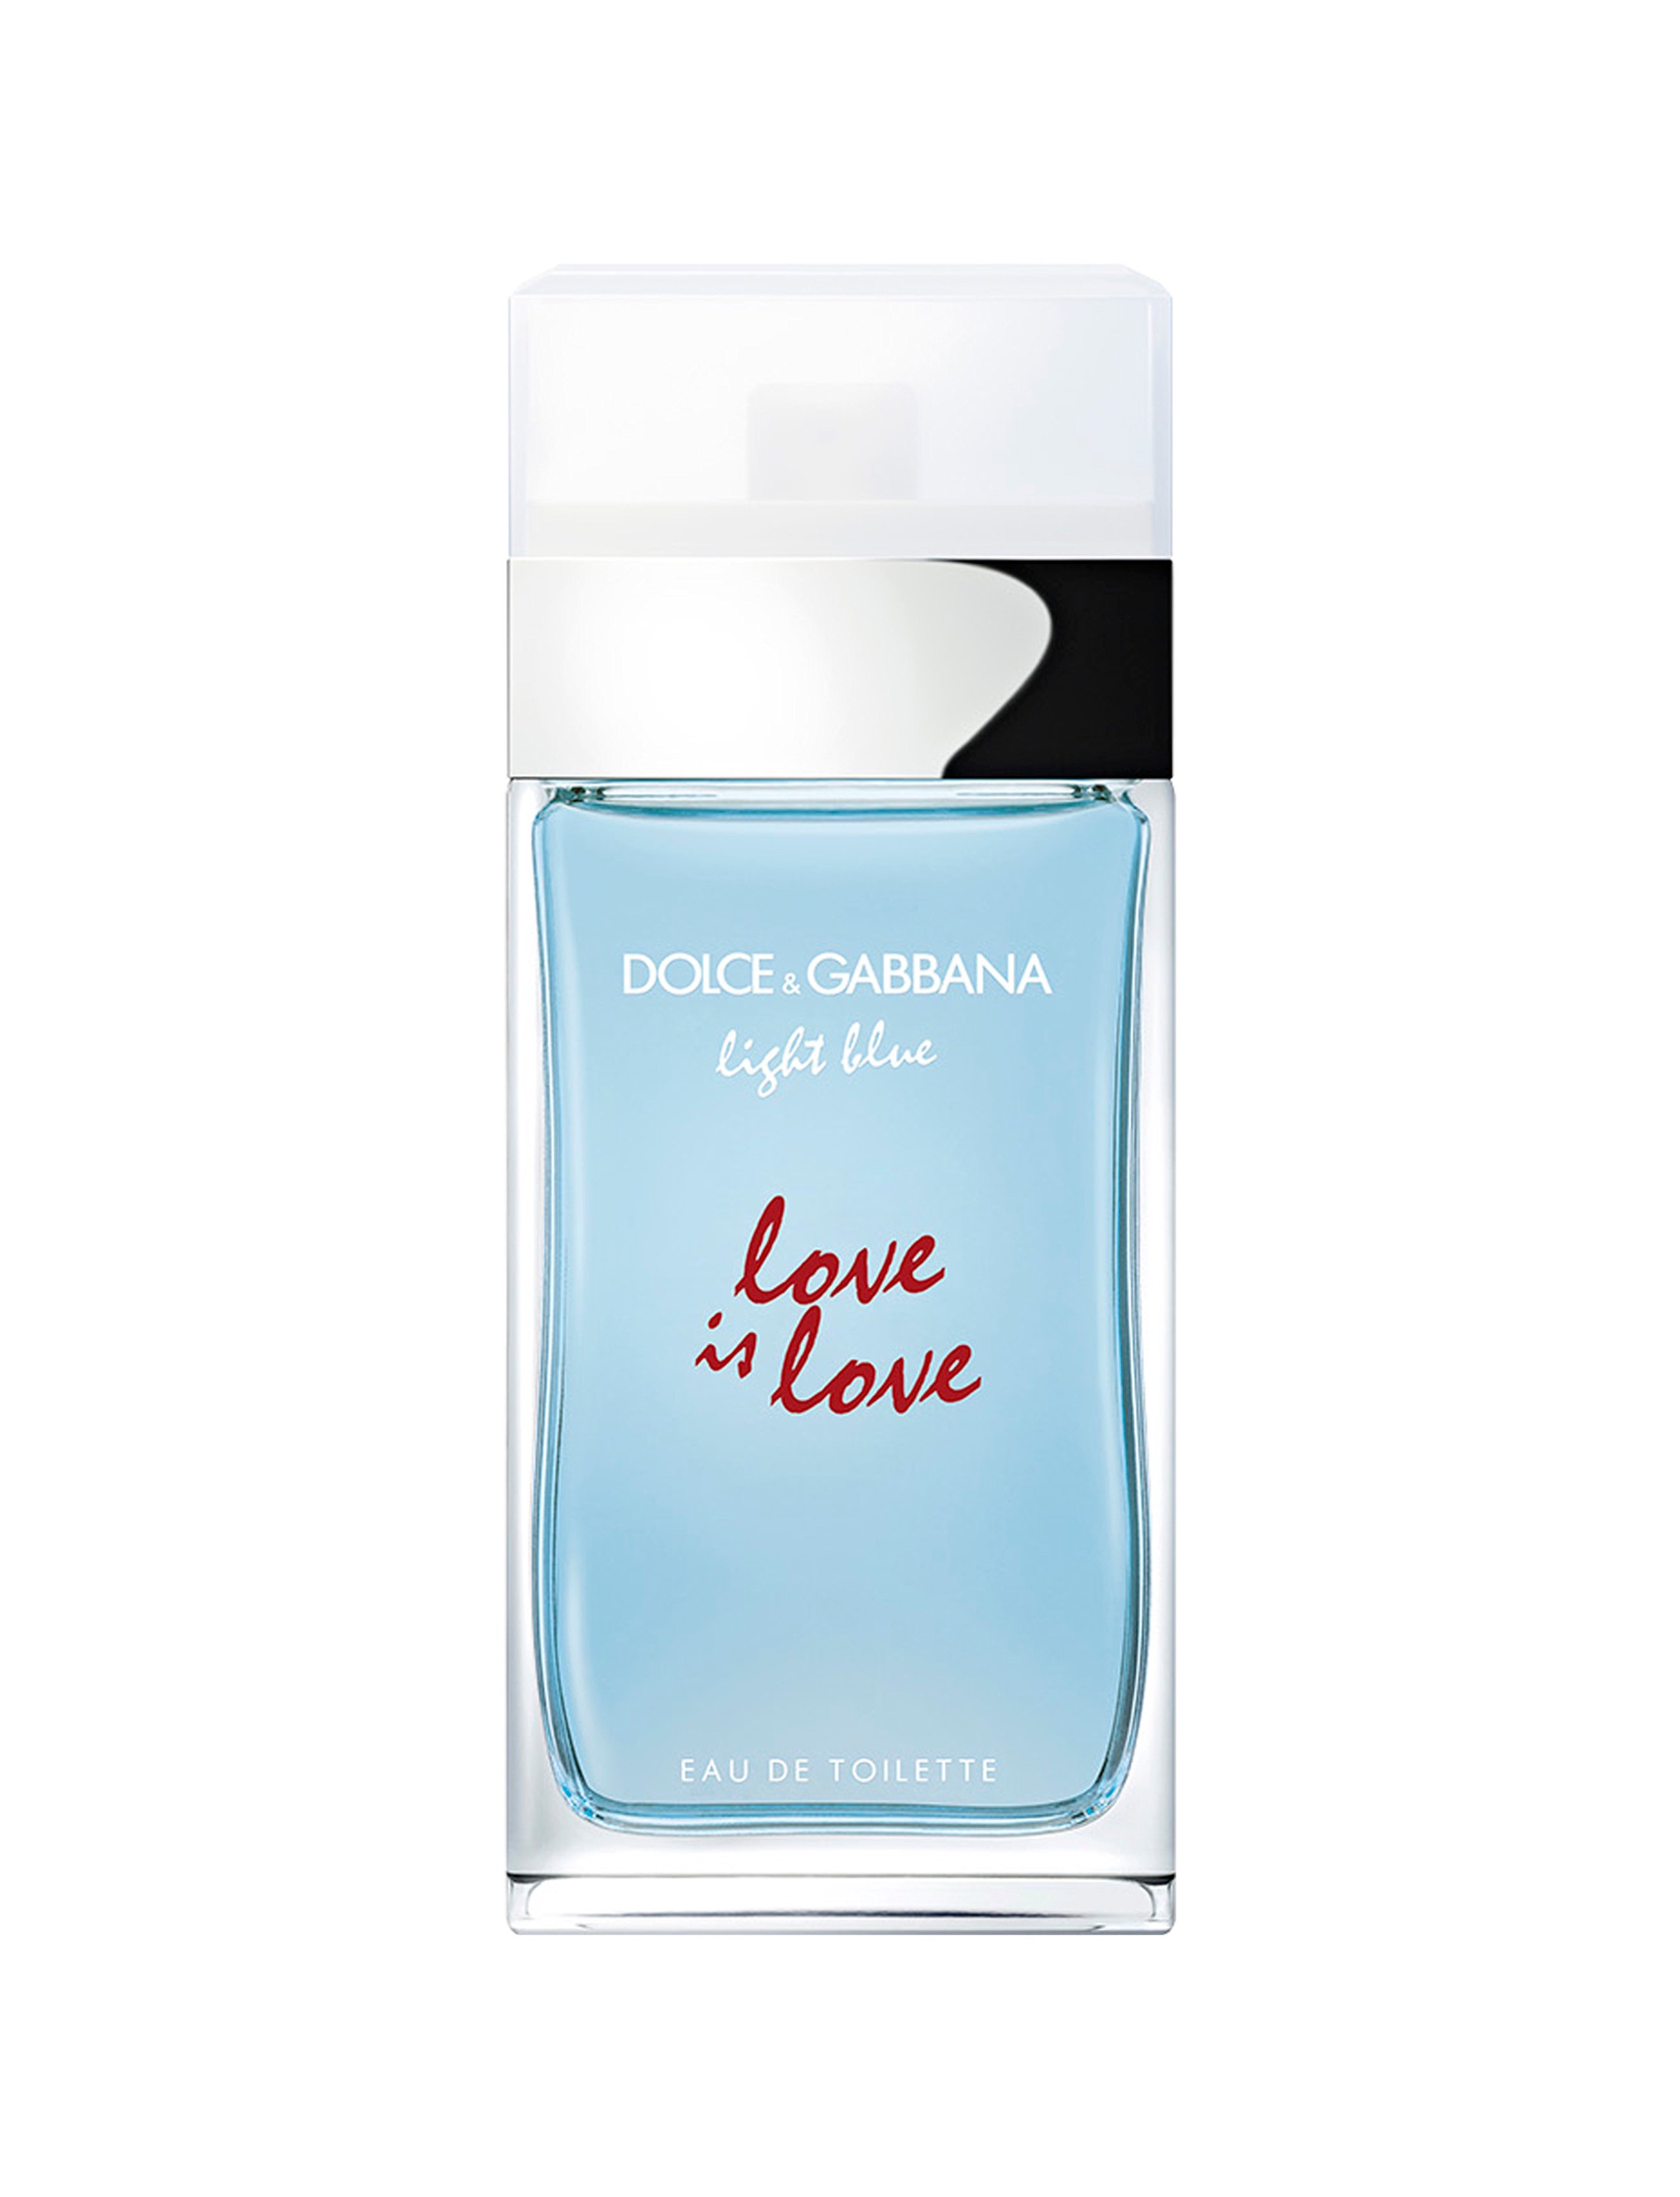 Dolce&Gabbana - Light Blue Love is love EDT 50 ml - Skjønnhet